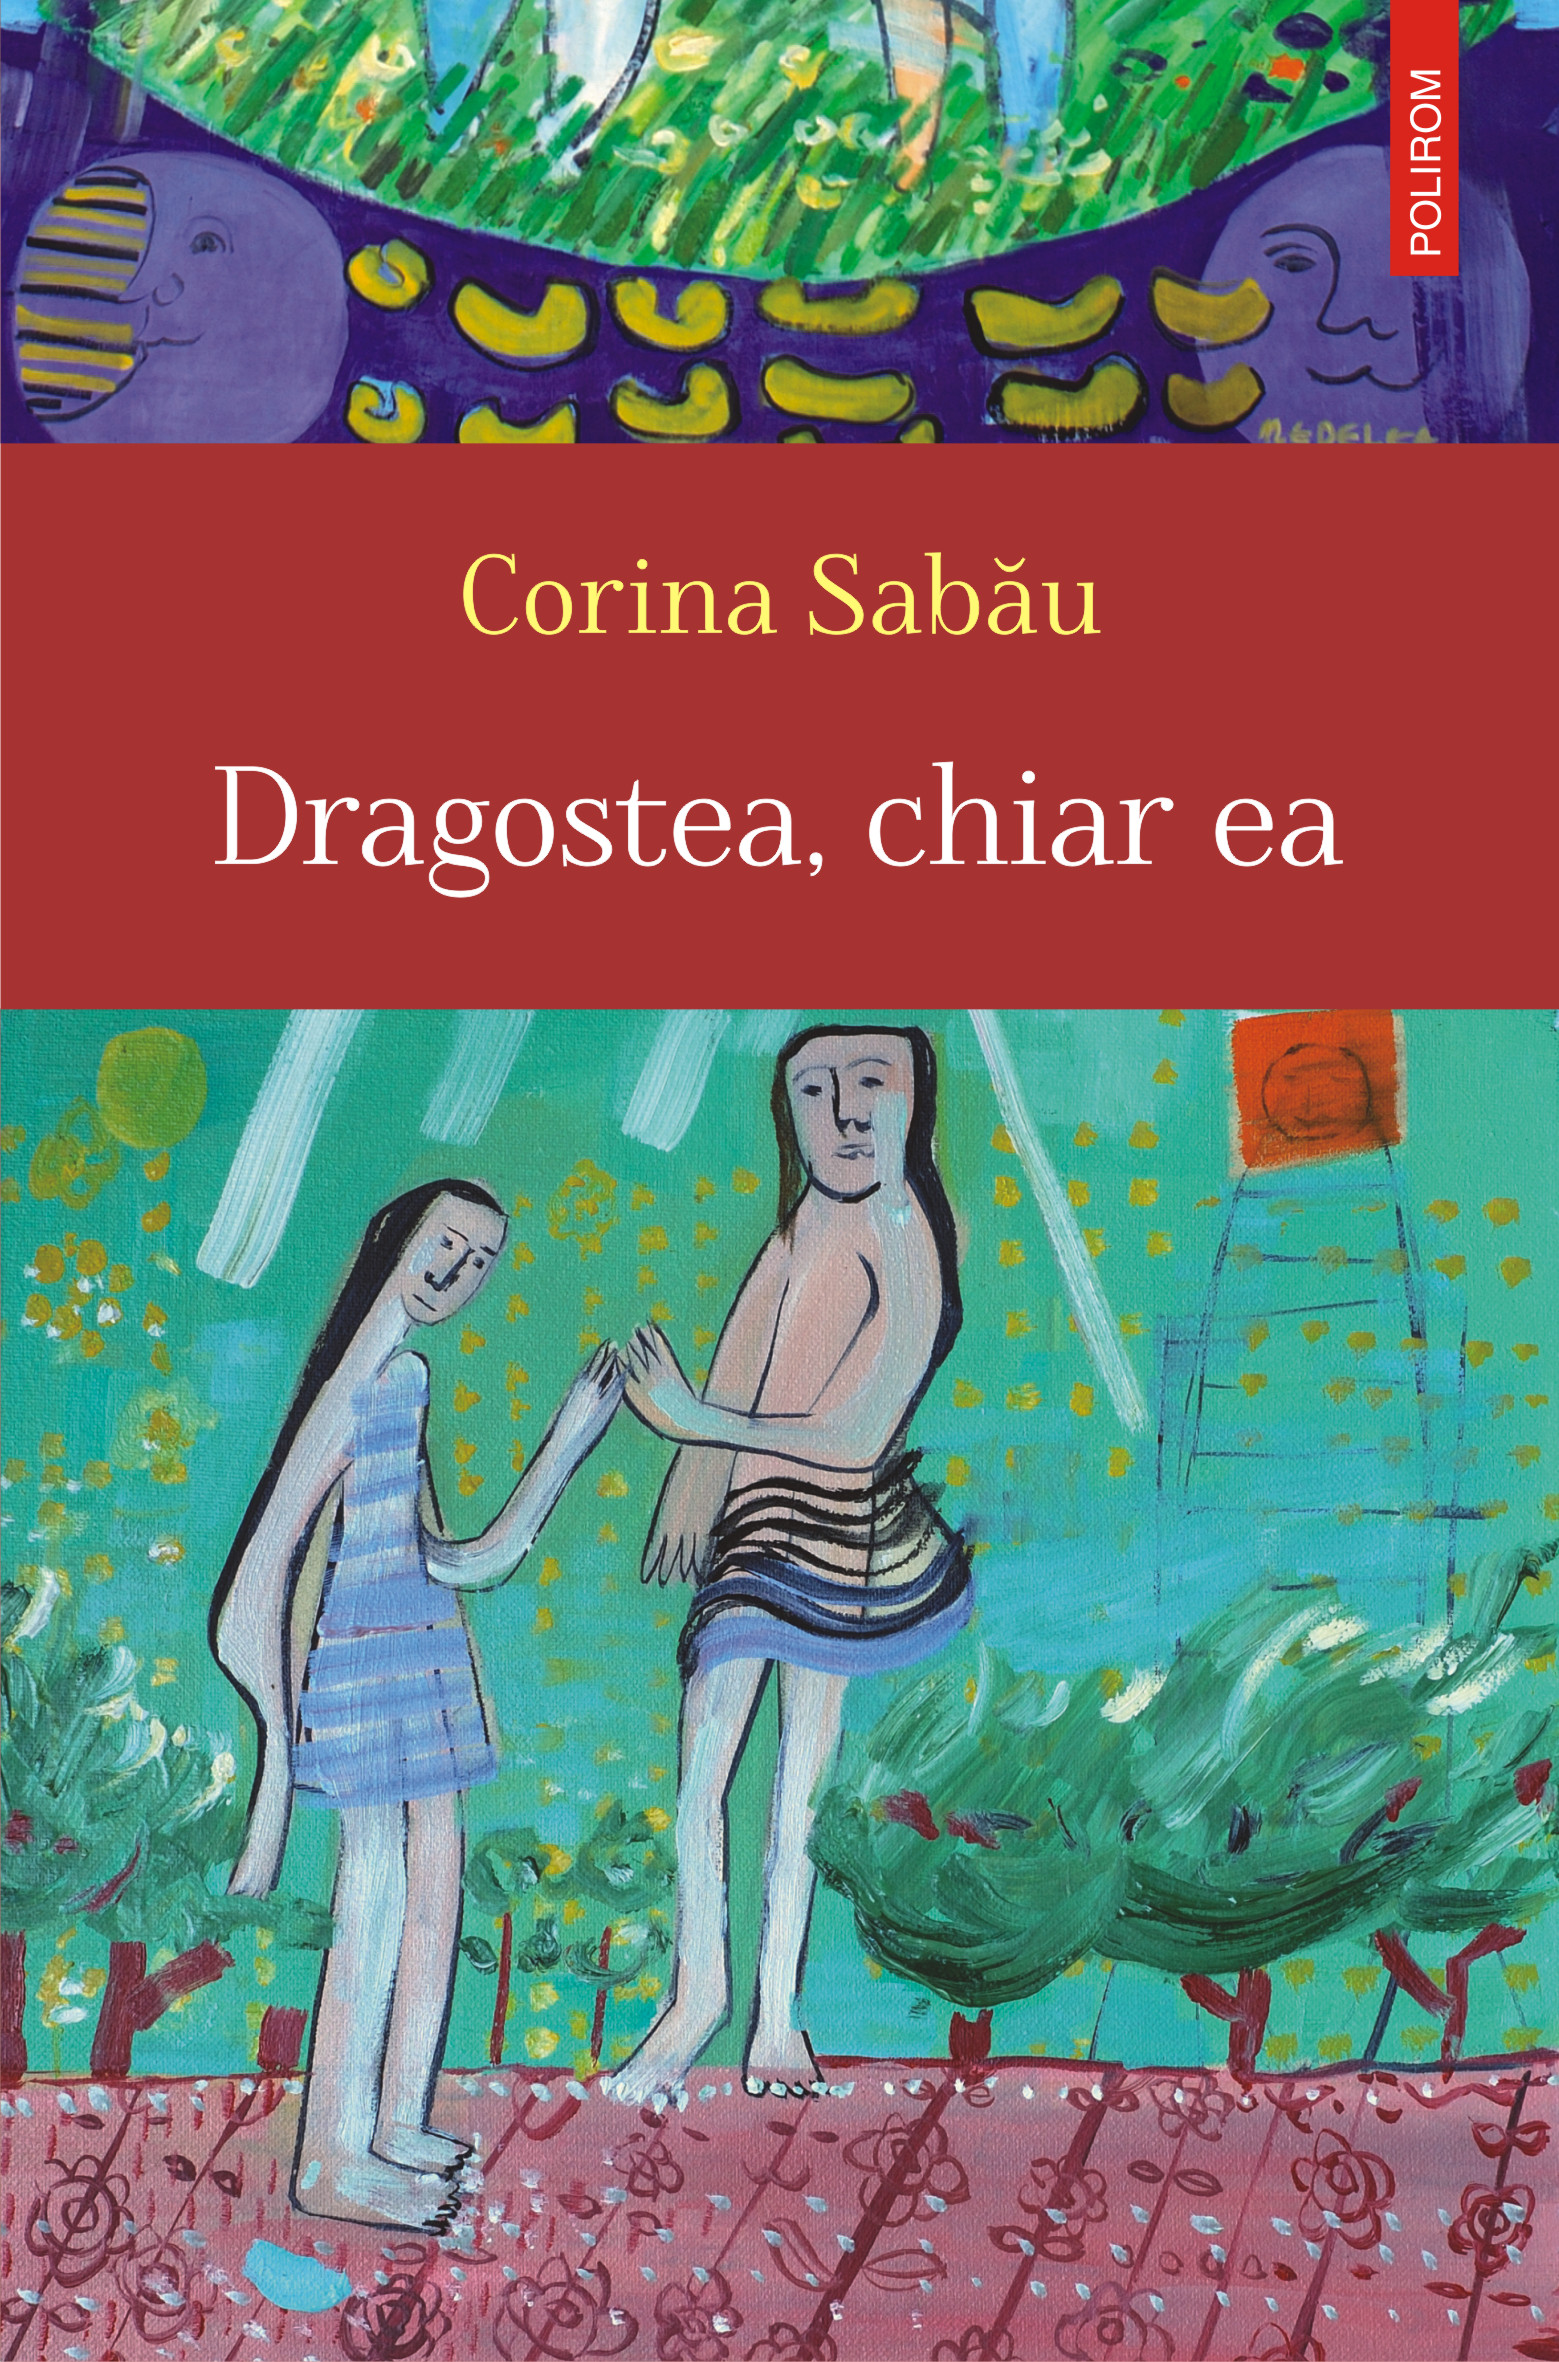 eBook Dragostea, chiar ea - Corina Sabau